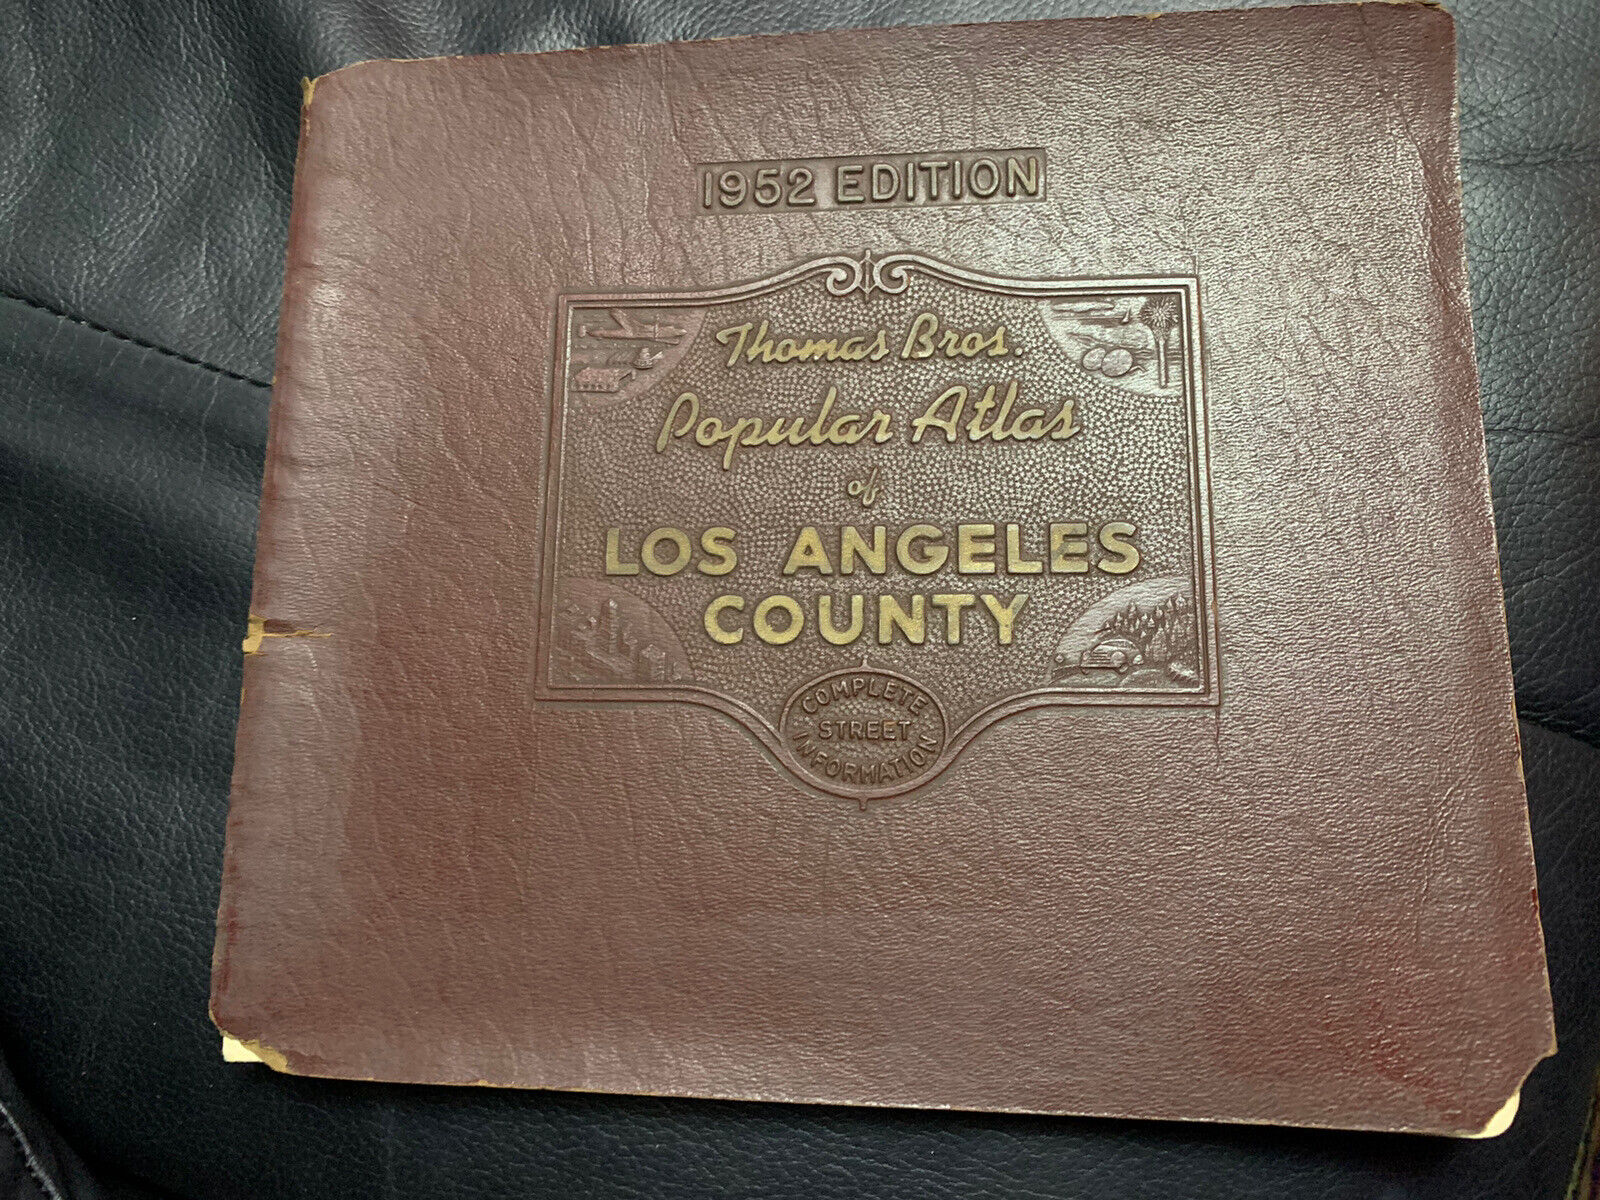 Vintage Collectible 1953 THOMAS BROS Popular Atlas of Los Angeles County LA